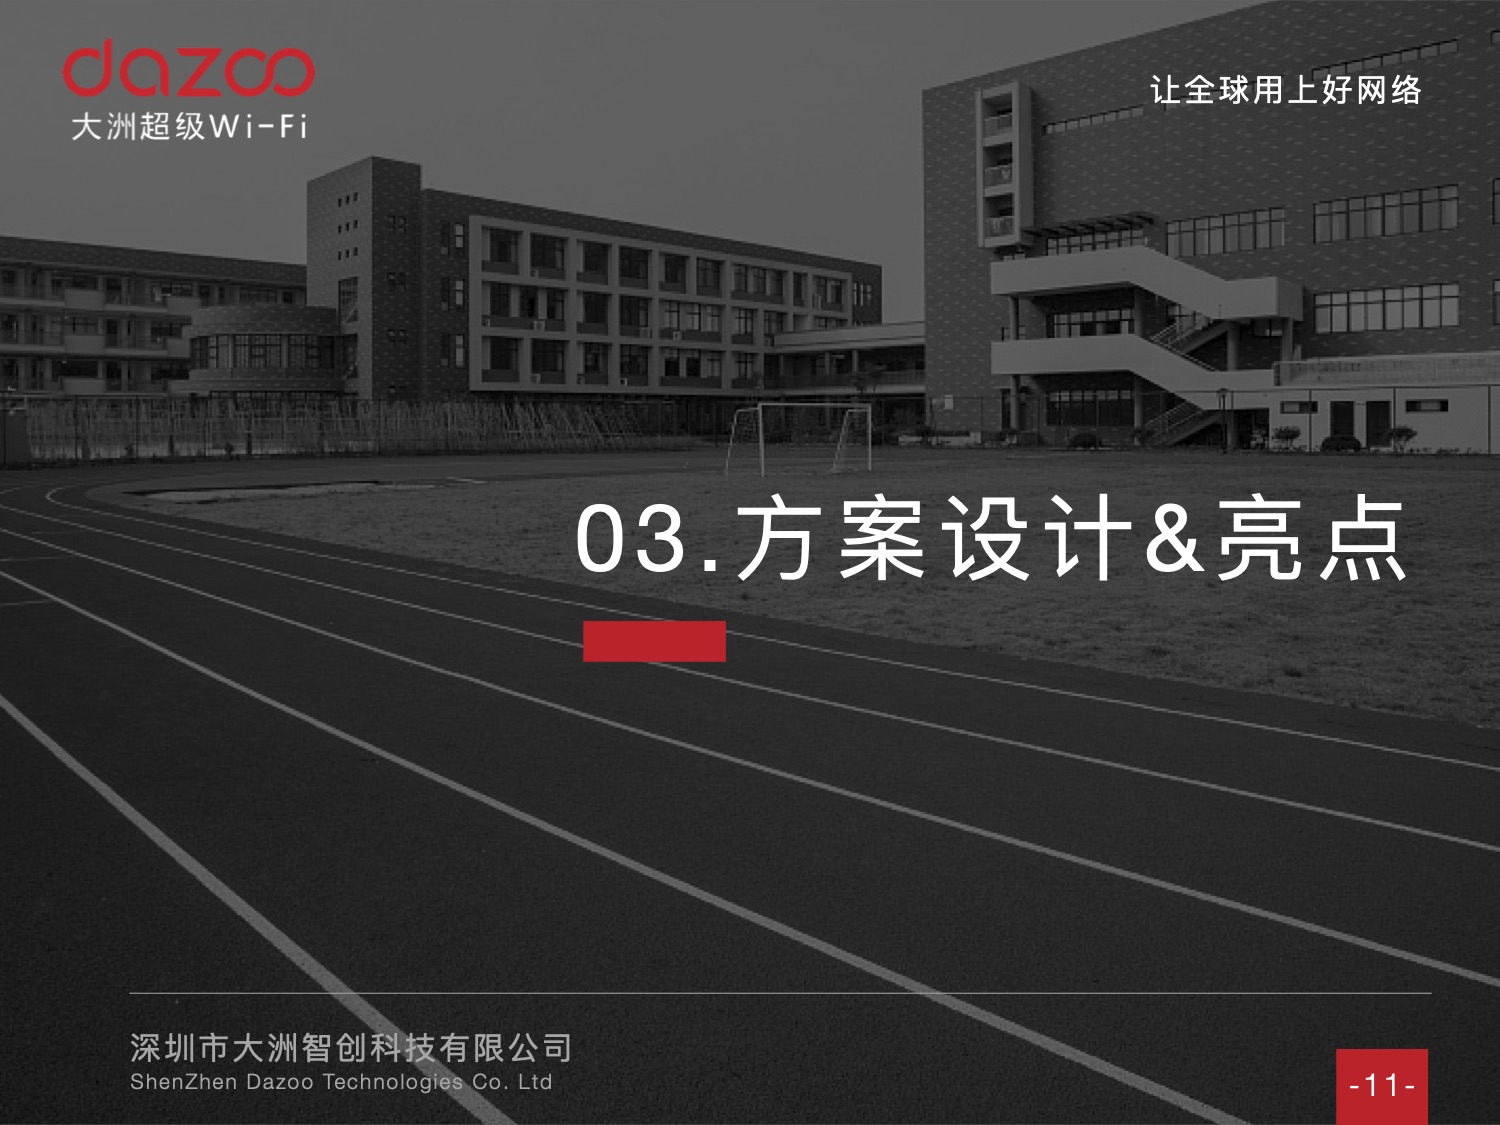 高校案例 - 郑州机电工业技工学校 整体校园网络建设